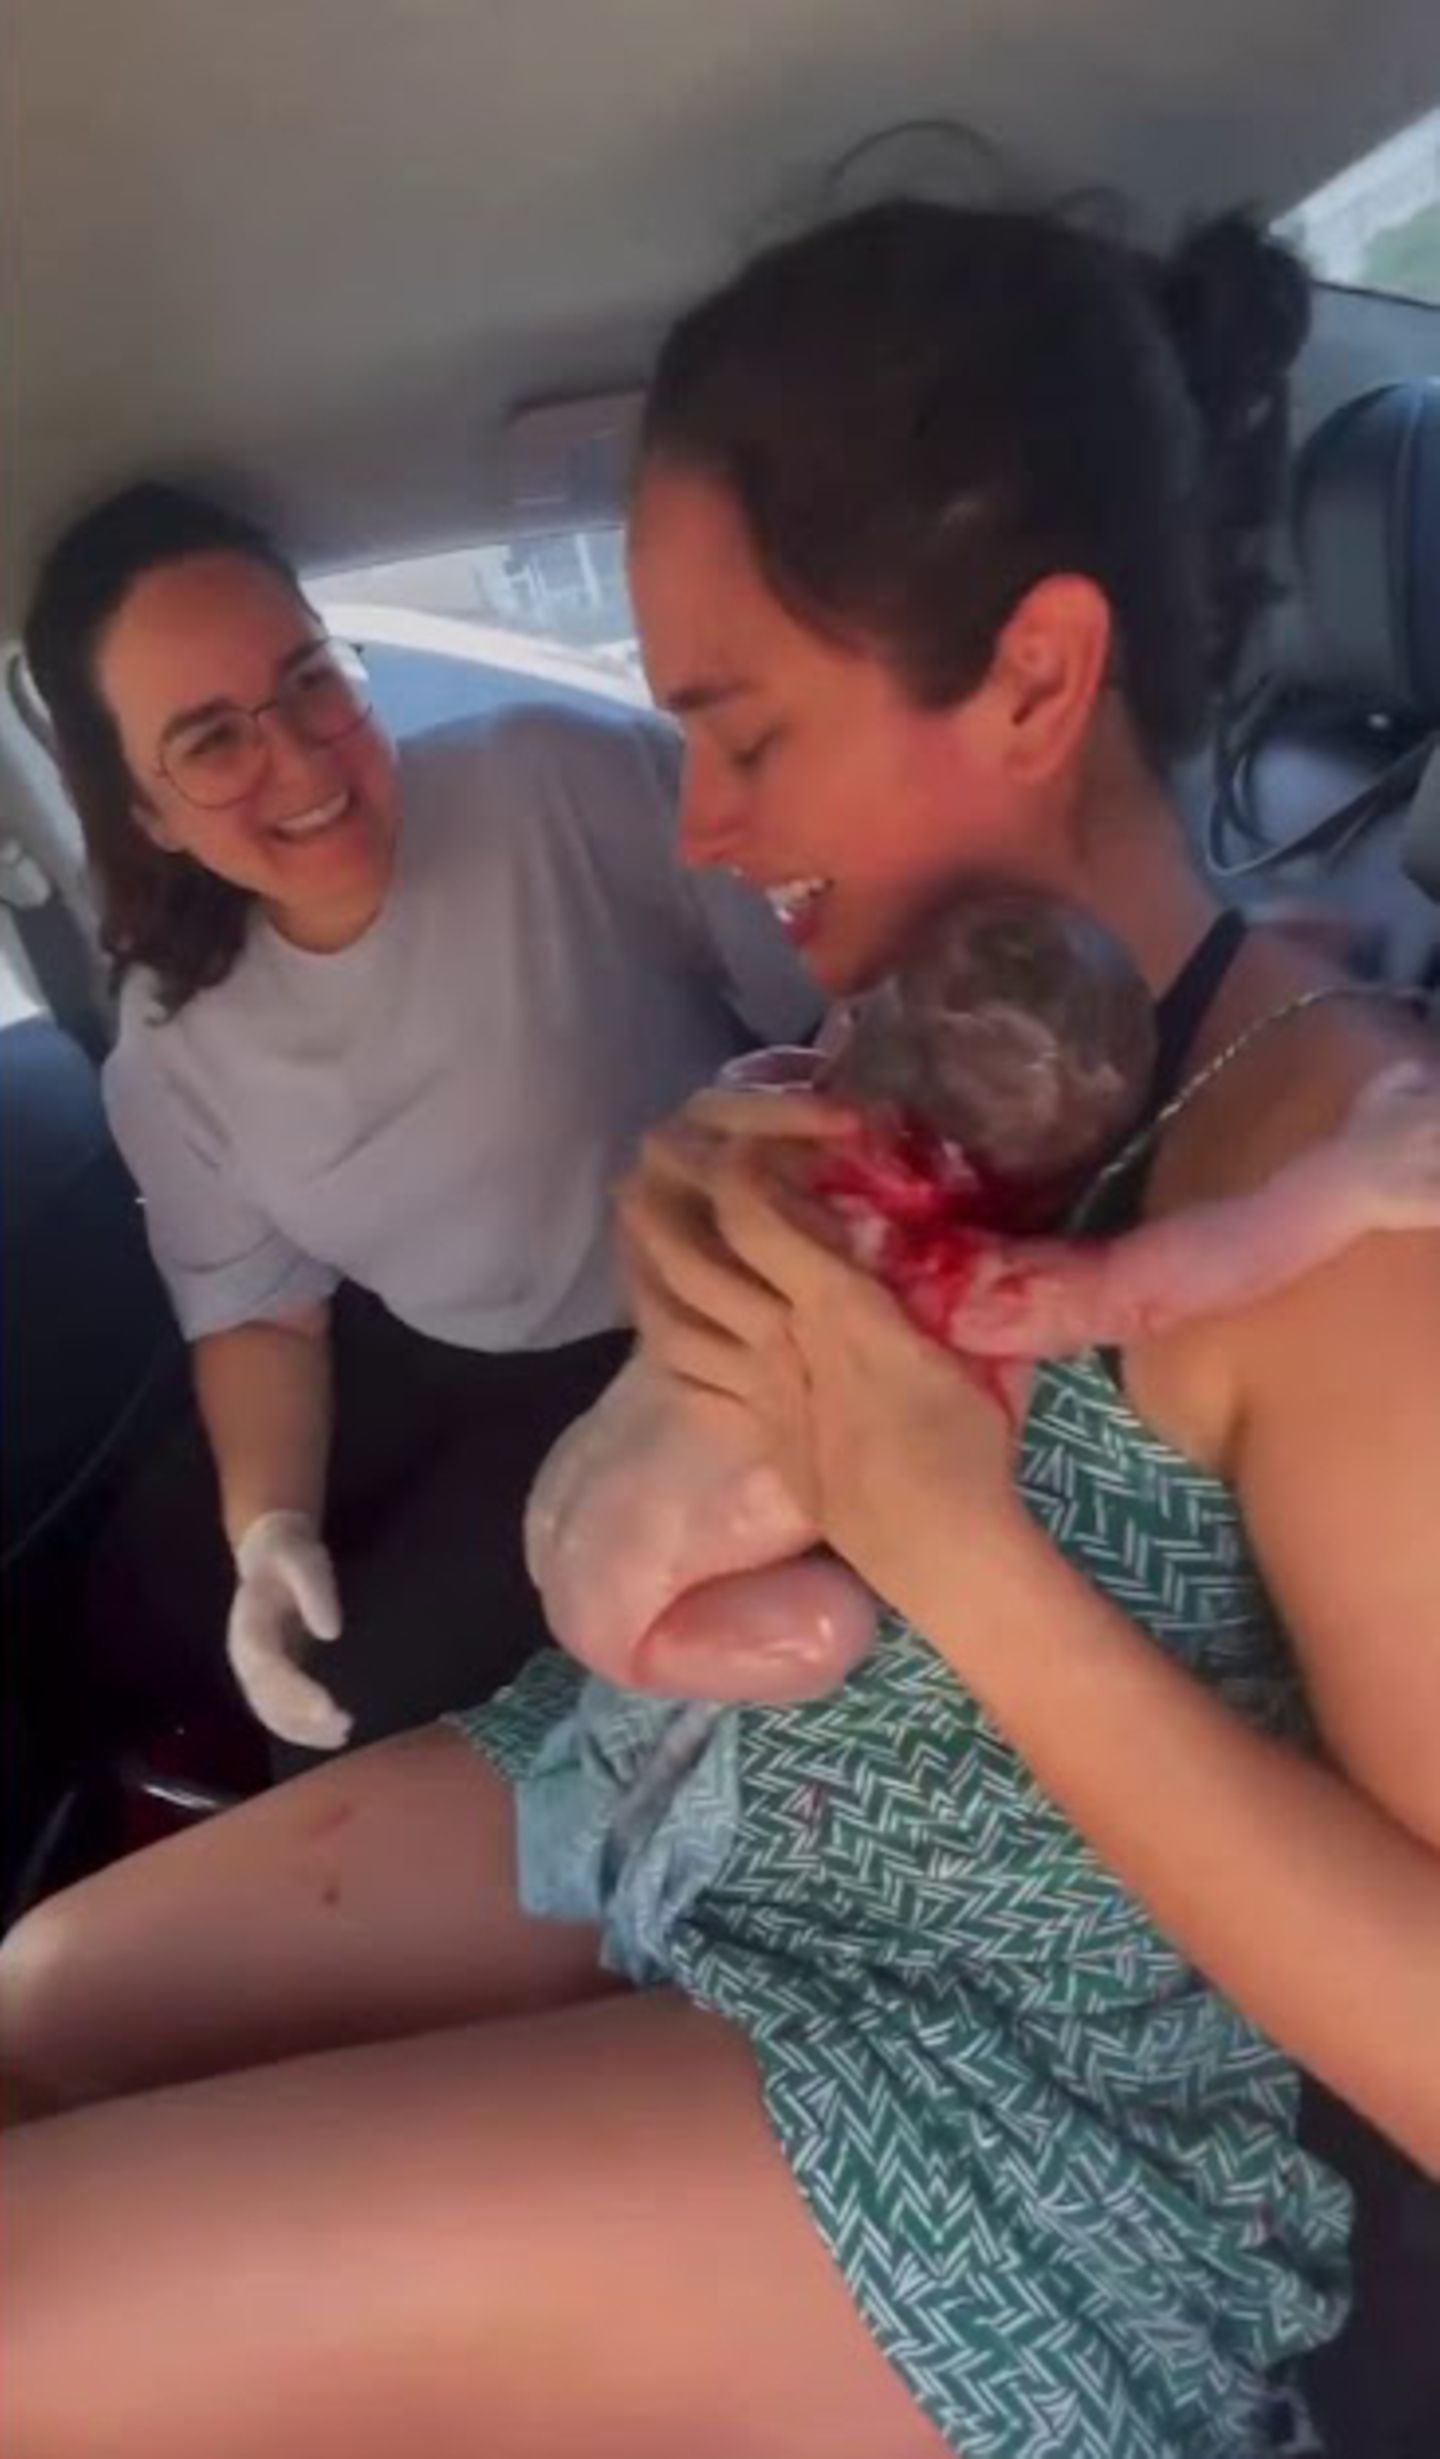 Geburt im Auto: Werdende Mutter mit Geburtshelferin im Fahrzeug